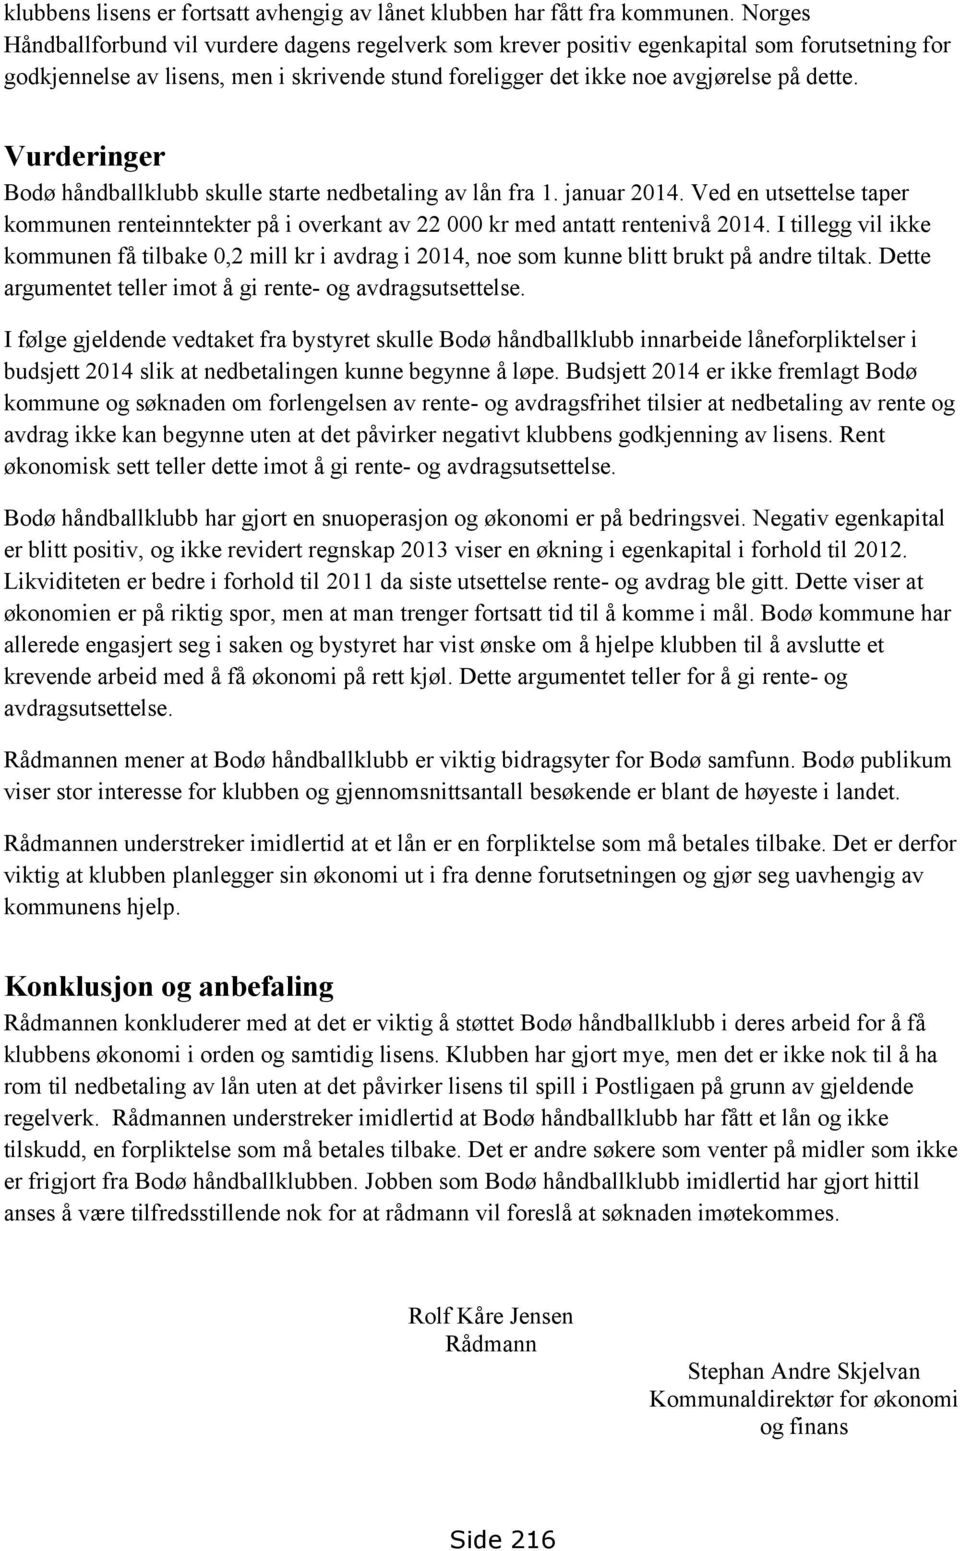 Vurderinger Bodø håndballklubb skulle starte nedbetaling av lån fra 1. januar 2014. Ved en utsettelse taper kommunen renteinntekter på i overkant av 22 000 kr med antatt rentenivå 2014.